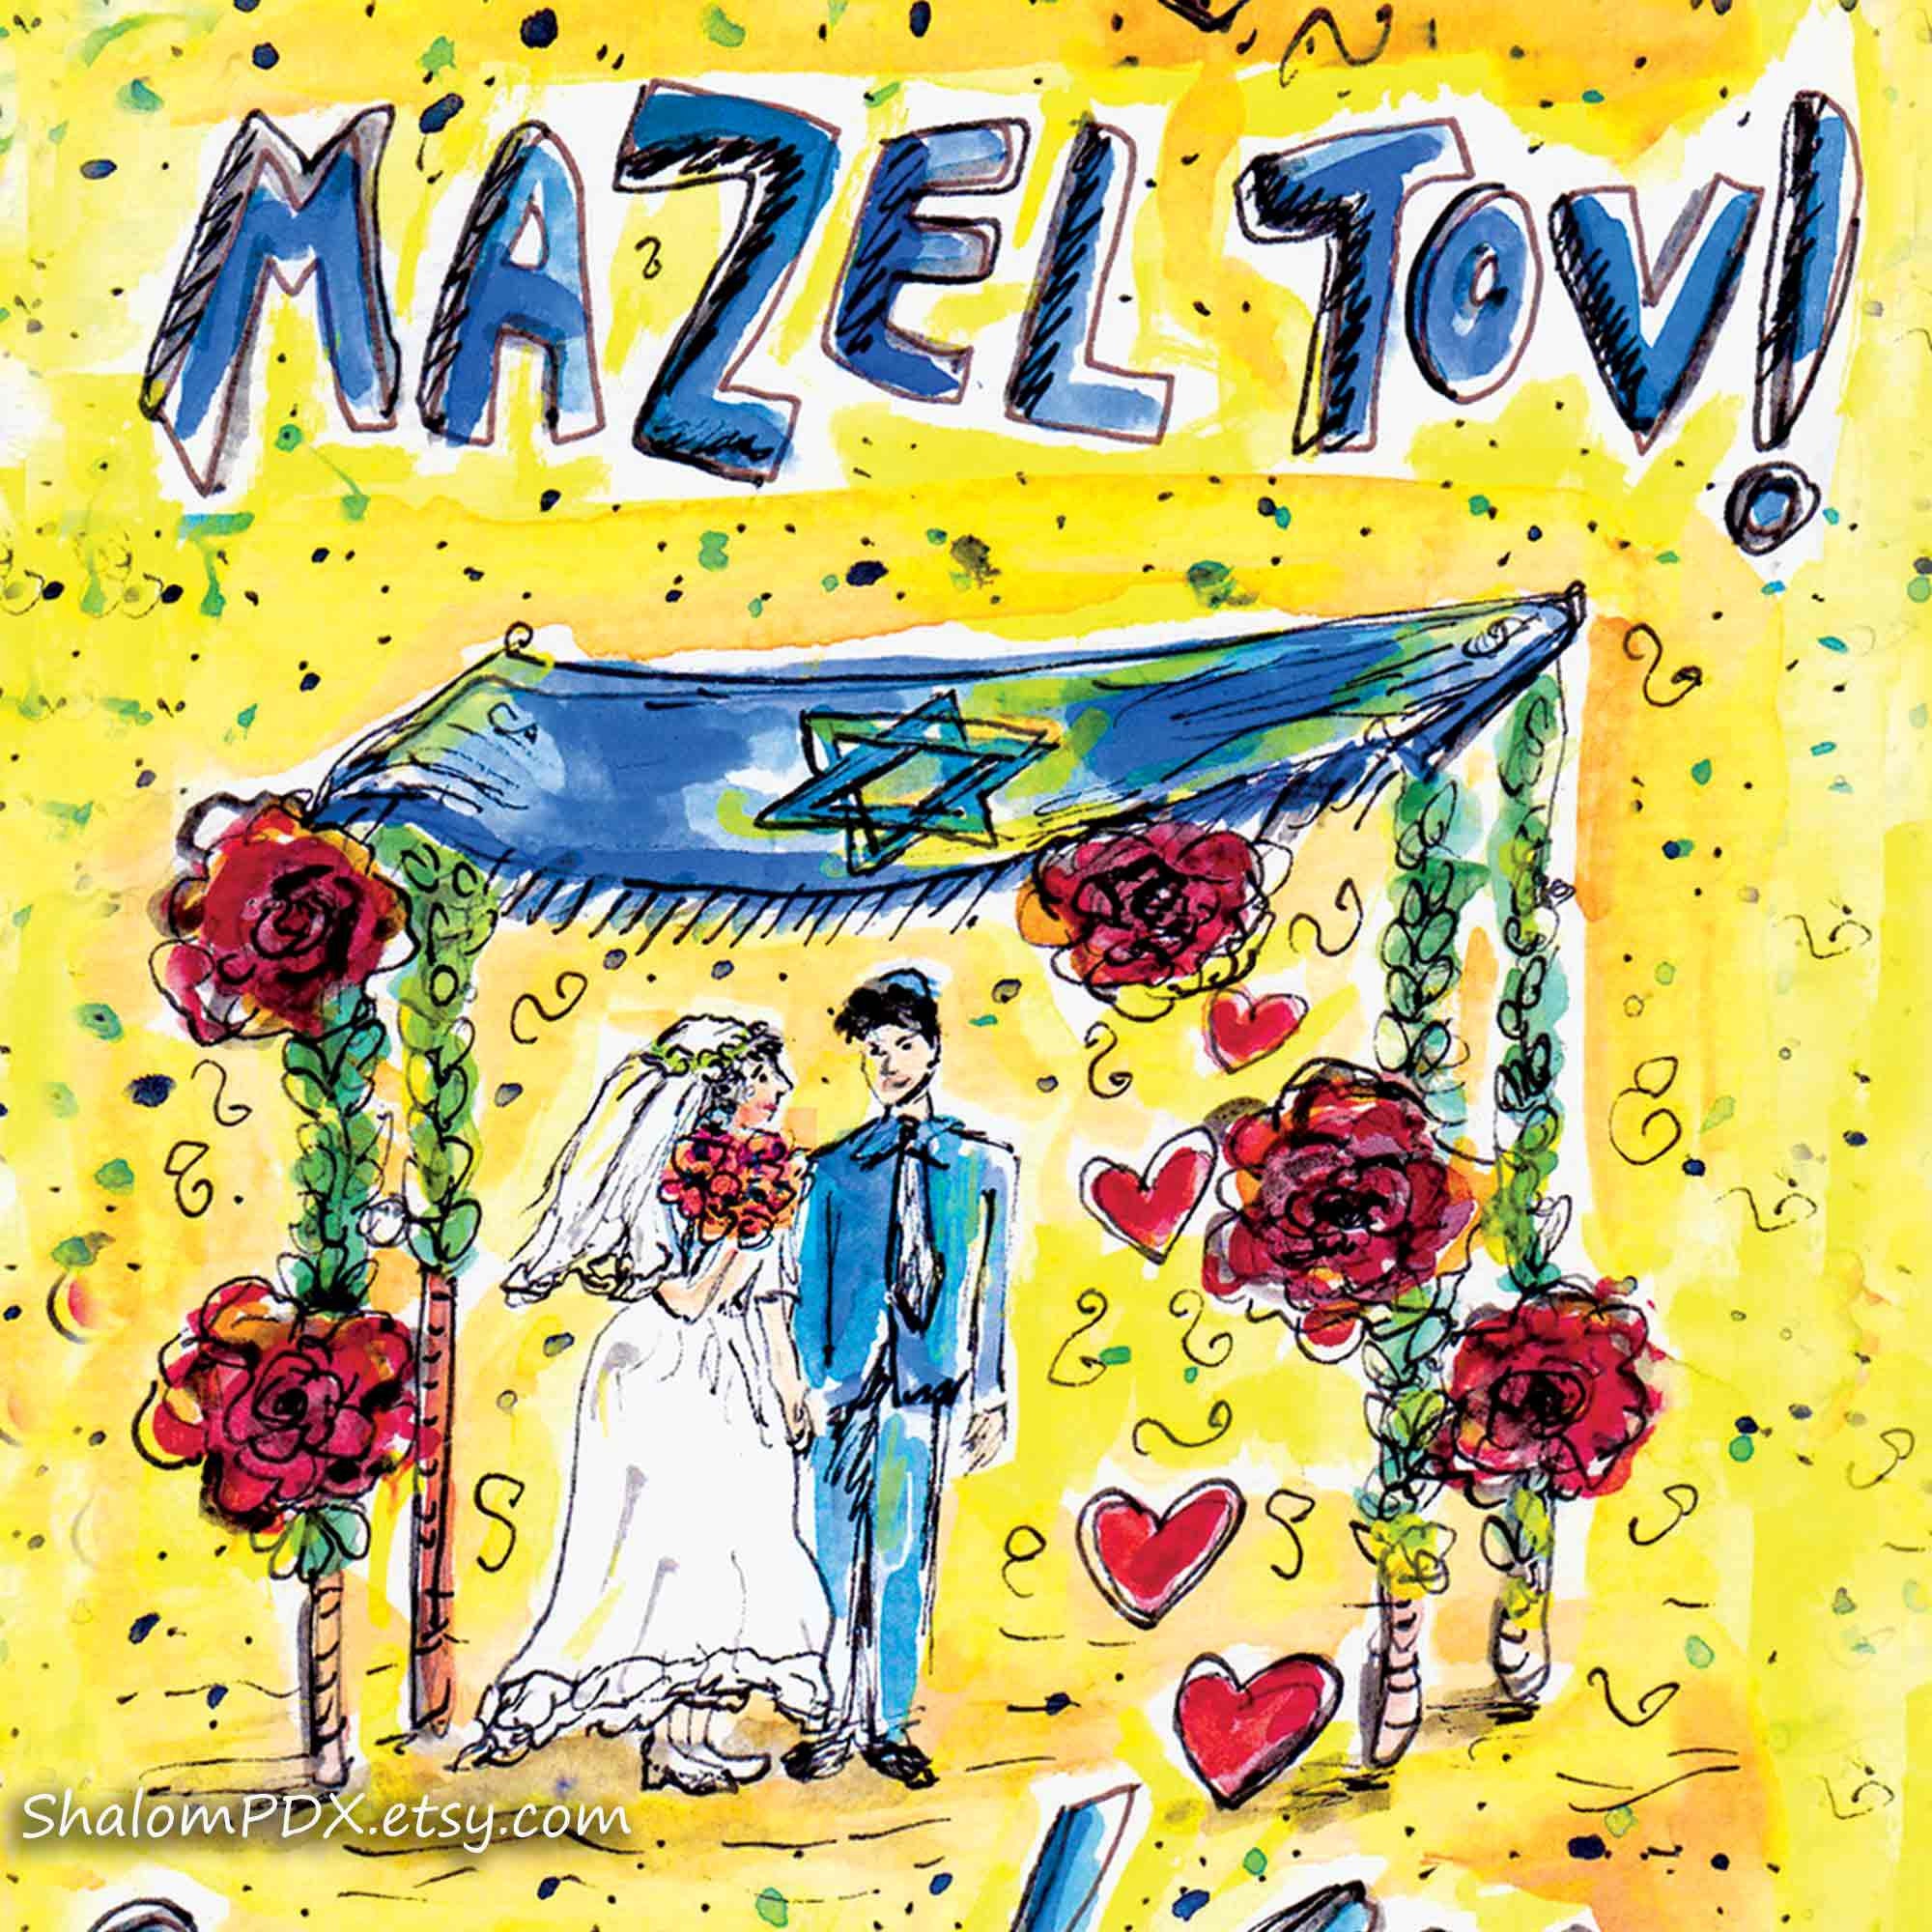 Jewish Wedding Card Mazel Tov Card Jewish Art Card Mazel image picture